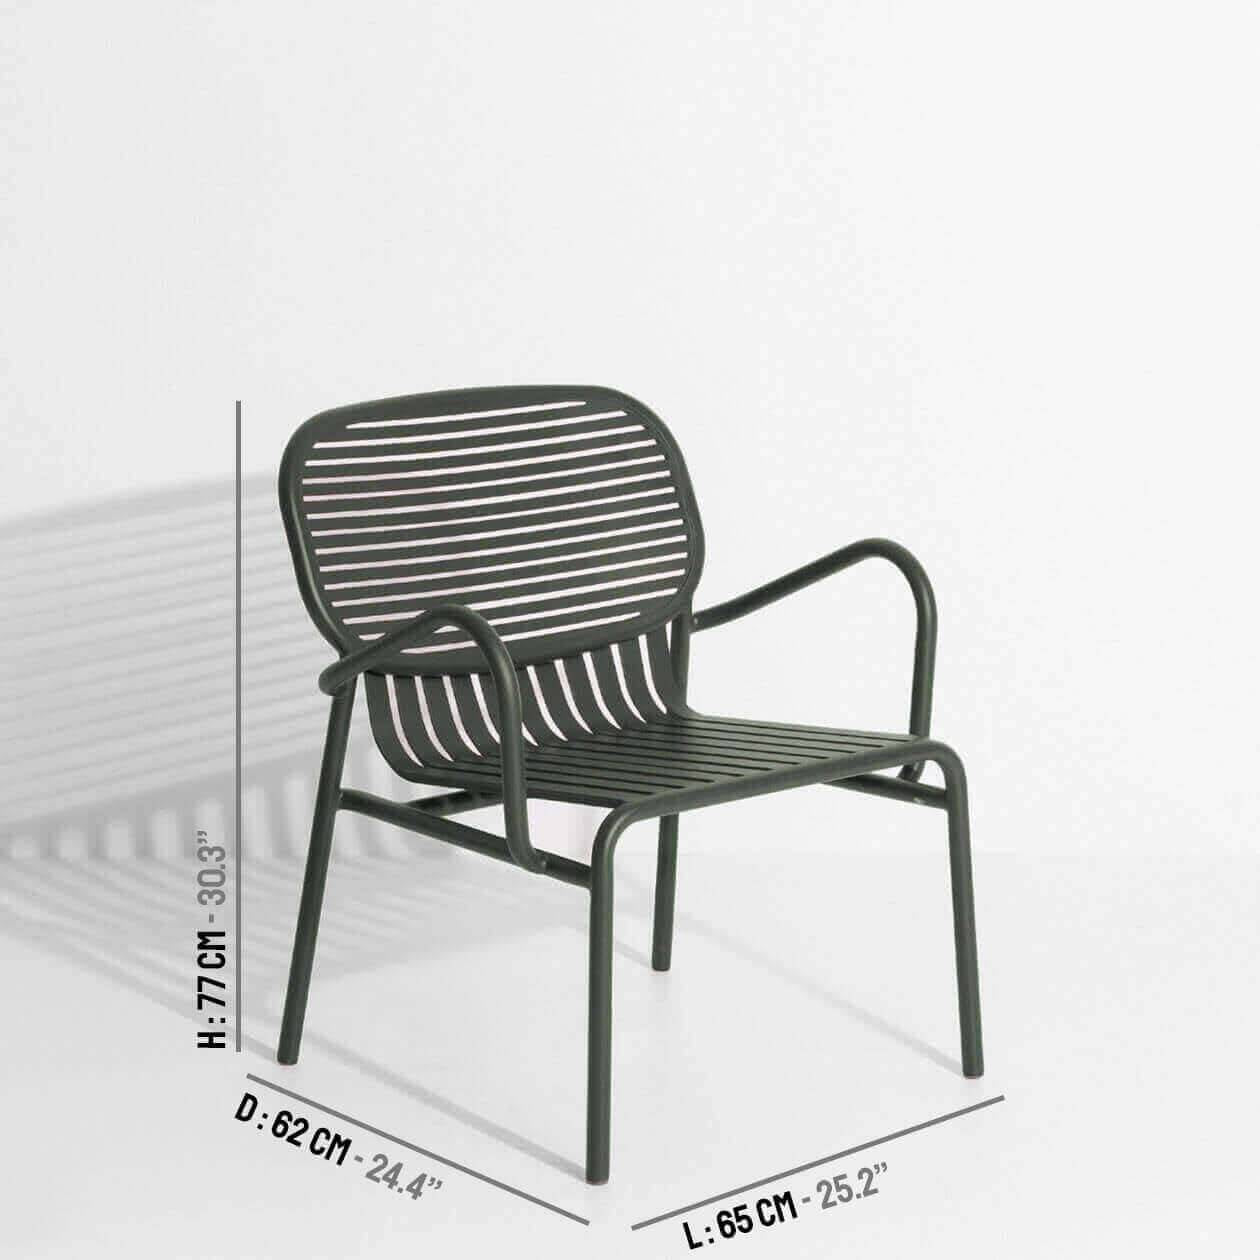 Week-End Garten Lounger in Green Glass präsentiert im Onlineshop von KAQTU Design AG. Outdoor-Sessel mit Armlehnen ist von Petite Friture